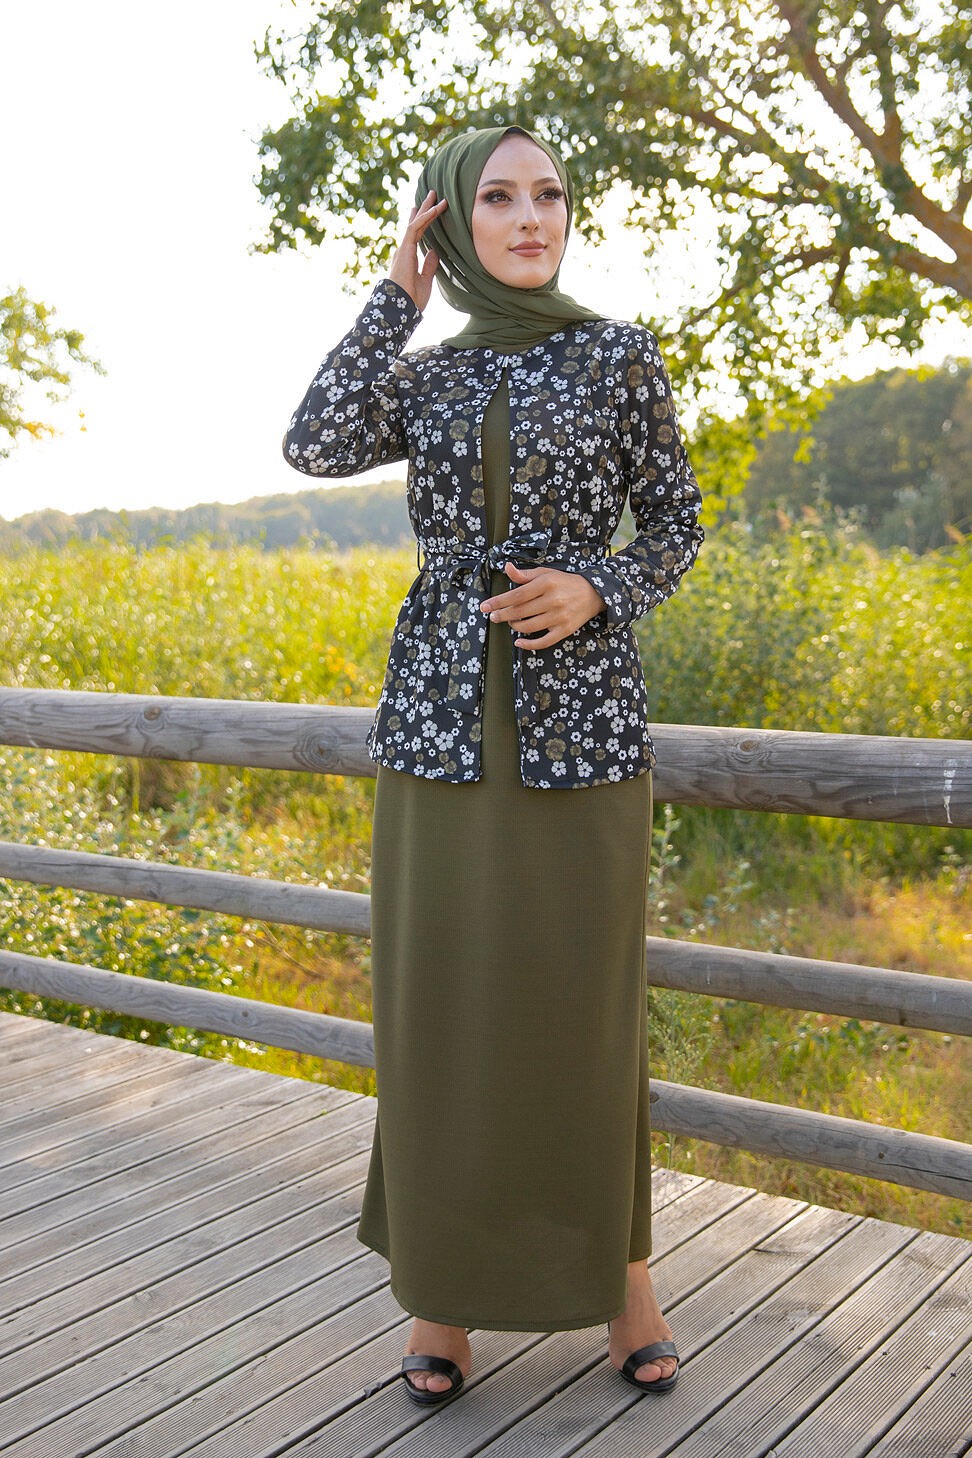 Amelis - Ensemble Survêtement bi-couleur à capuche pour femme voilée (Hijab  Sport Ootd - Boutique en ligne) - Couleur Mauve Sélectionner la taille XS